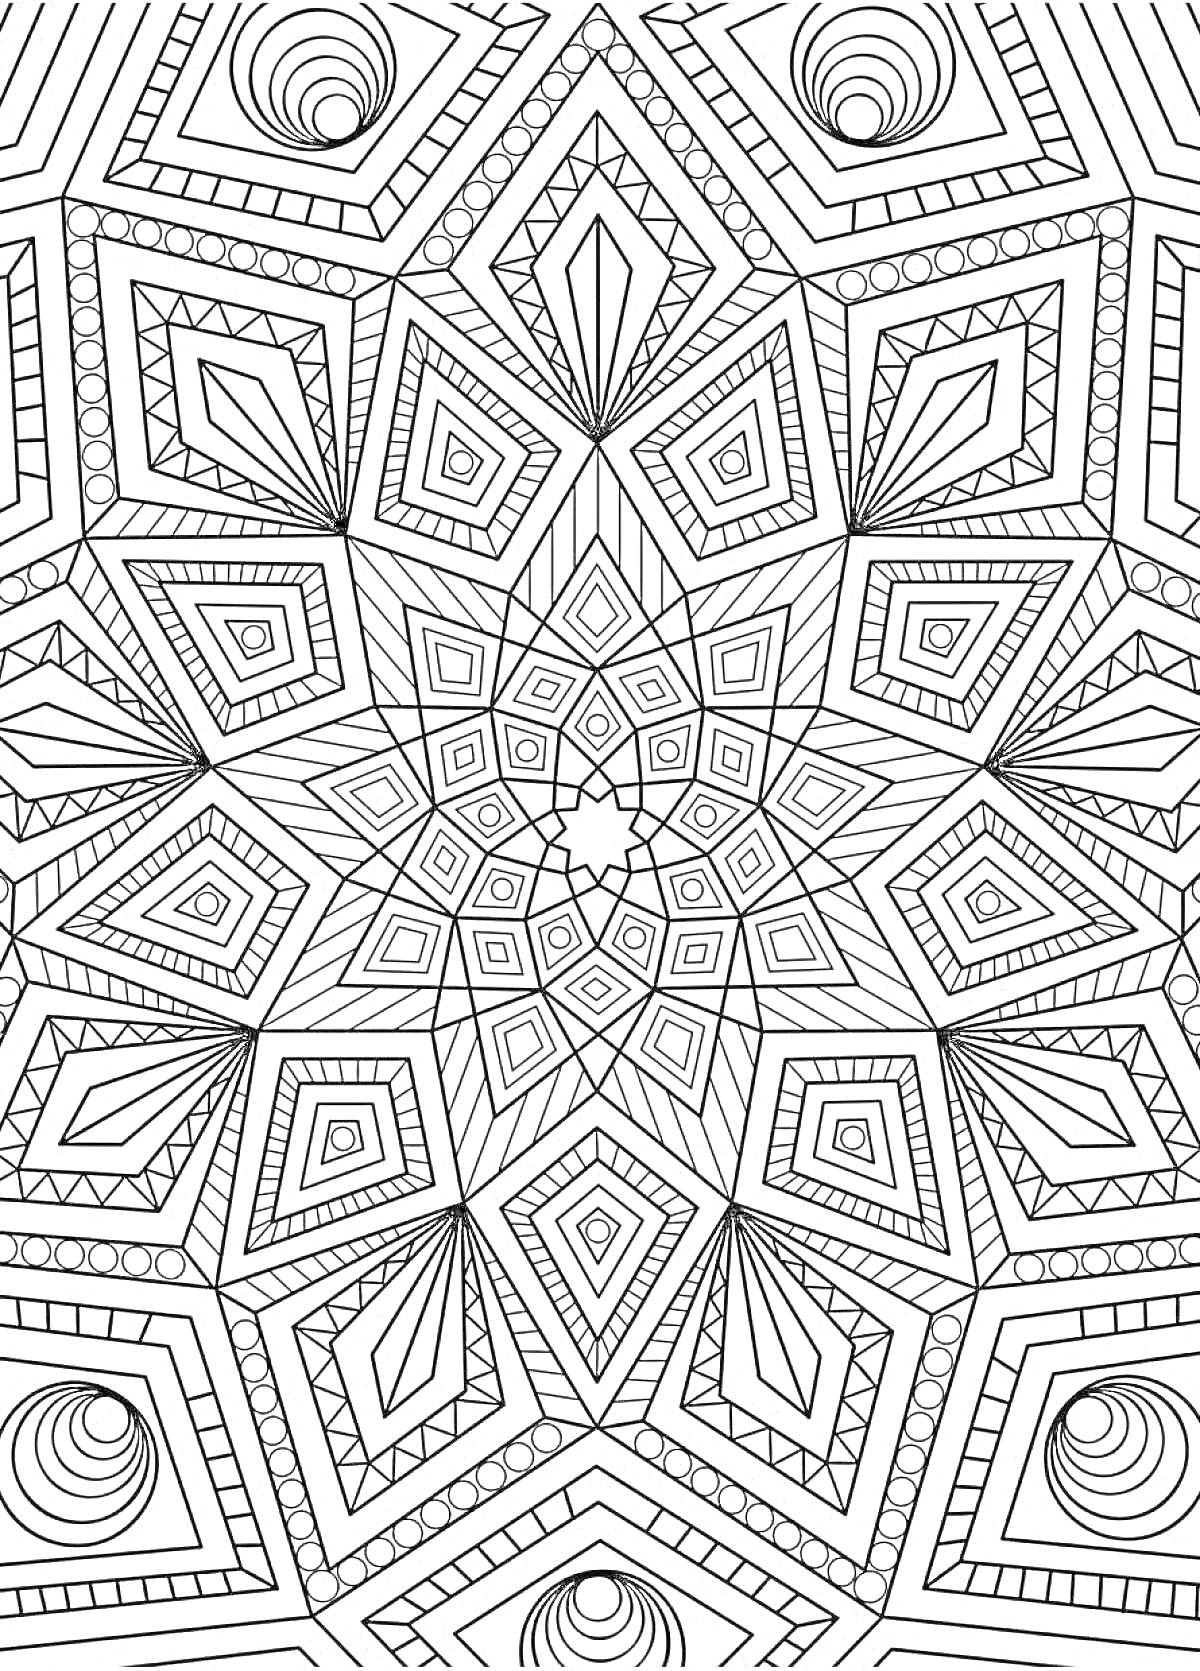 Раскраска Симметричные мандалы с геометрическими фигурами, узоры со звездами, ромбами и кругами